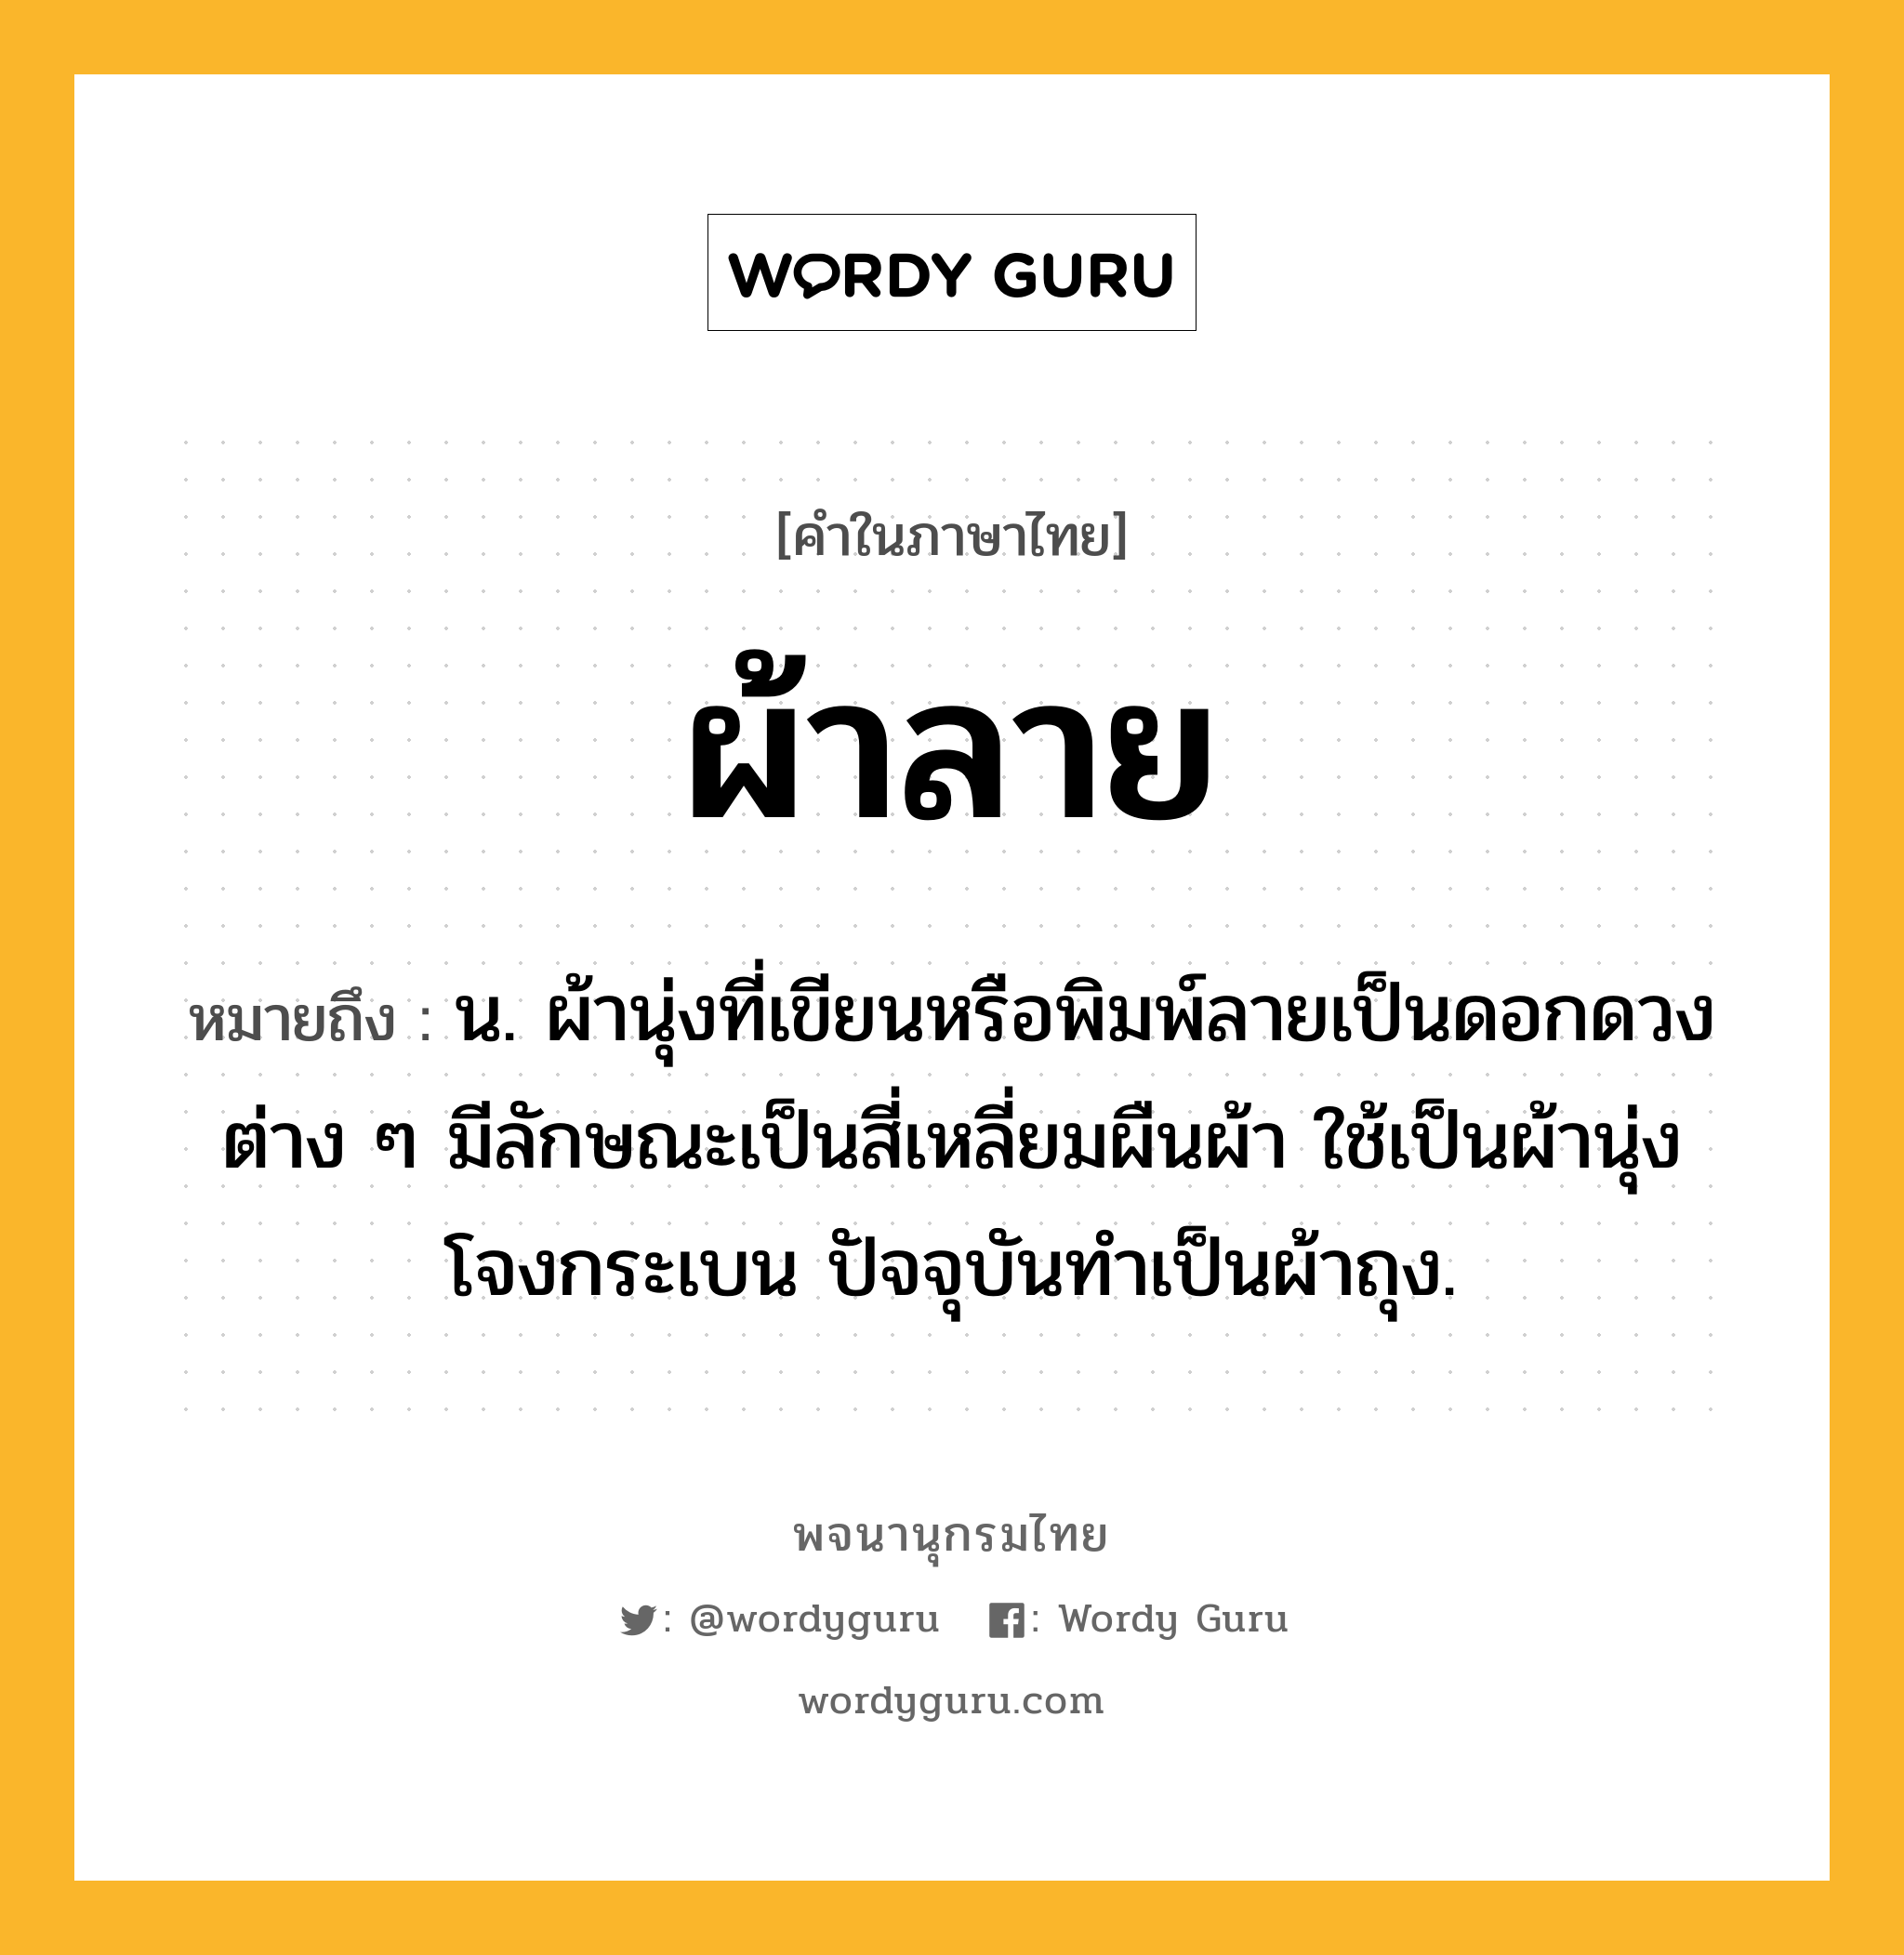 ผ้าลาย หมายถึงอะไร?, คำในภาษาไทย ผ้าลาย หมายถึง น. ผ้านุ่งที่เขียนหรือพิมพ์ลายเป็นดอกดวงต่าง ๆ มีลักษณะเป็นสี่เหลี่ยมผืนผ้า ใช้เป็นผ้านุ่งโจงกระเบน ปัจจุบันทําเป็นผ้าถุง.